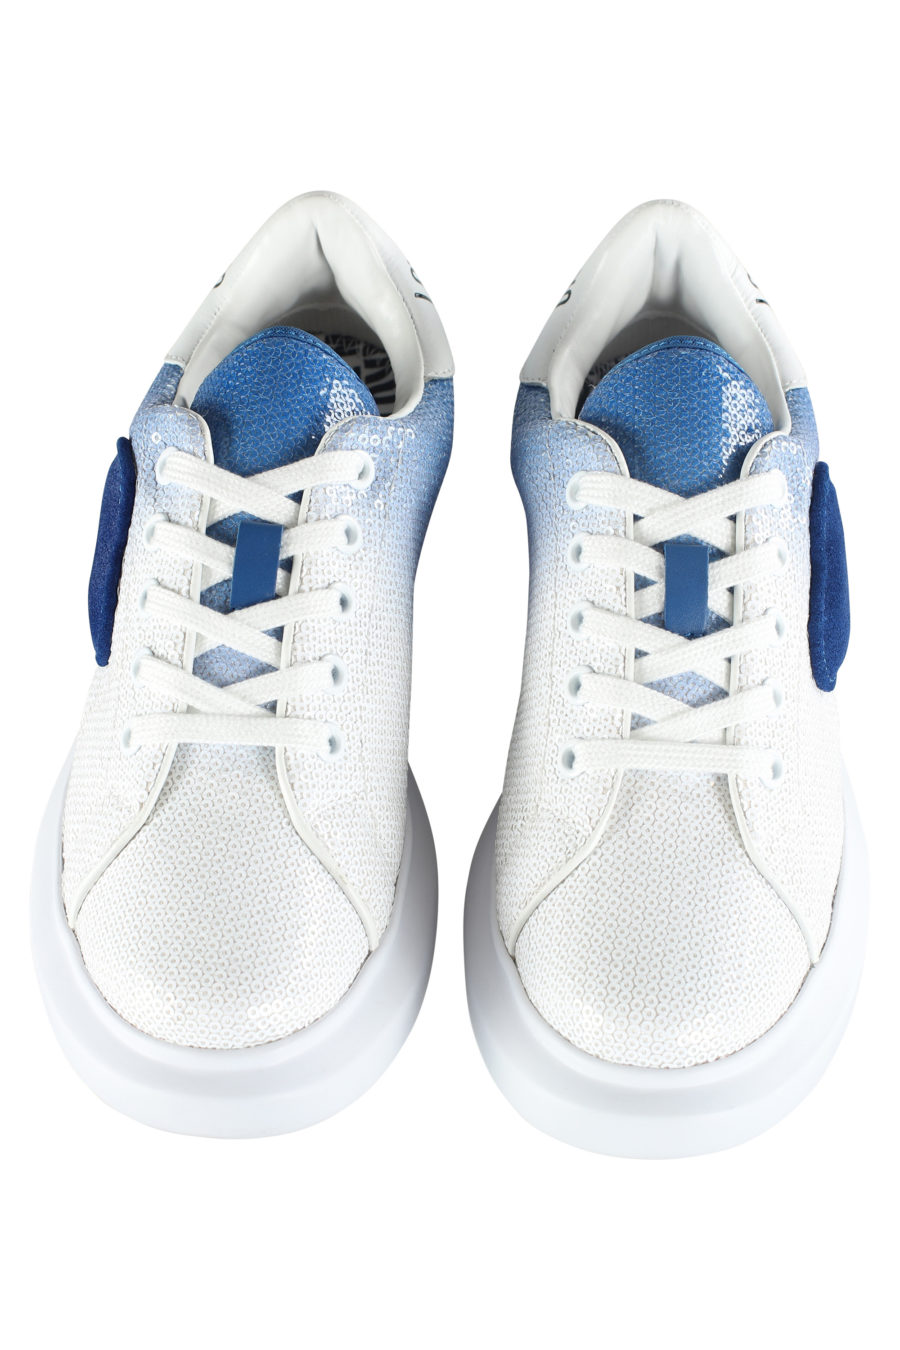 Zapatillas blancas con degrade azul y lentejuelas - IMG 5350